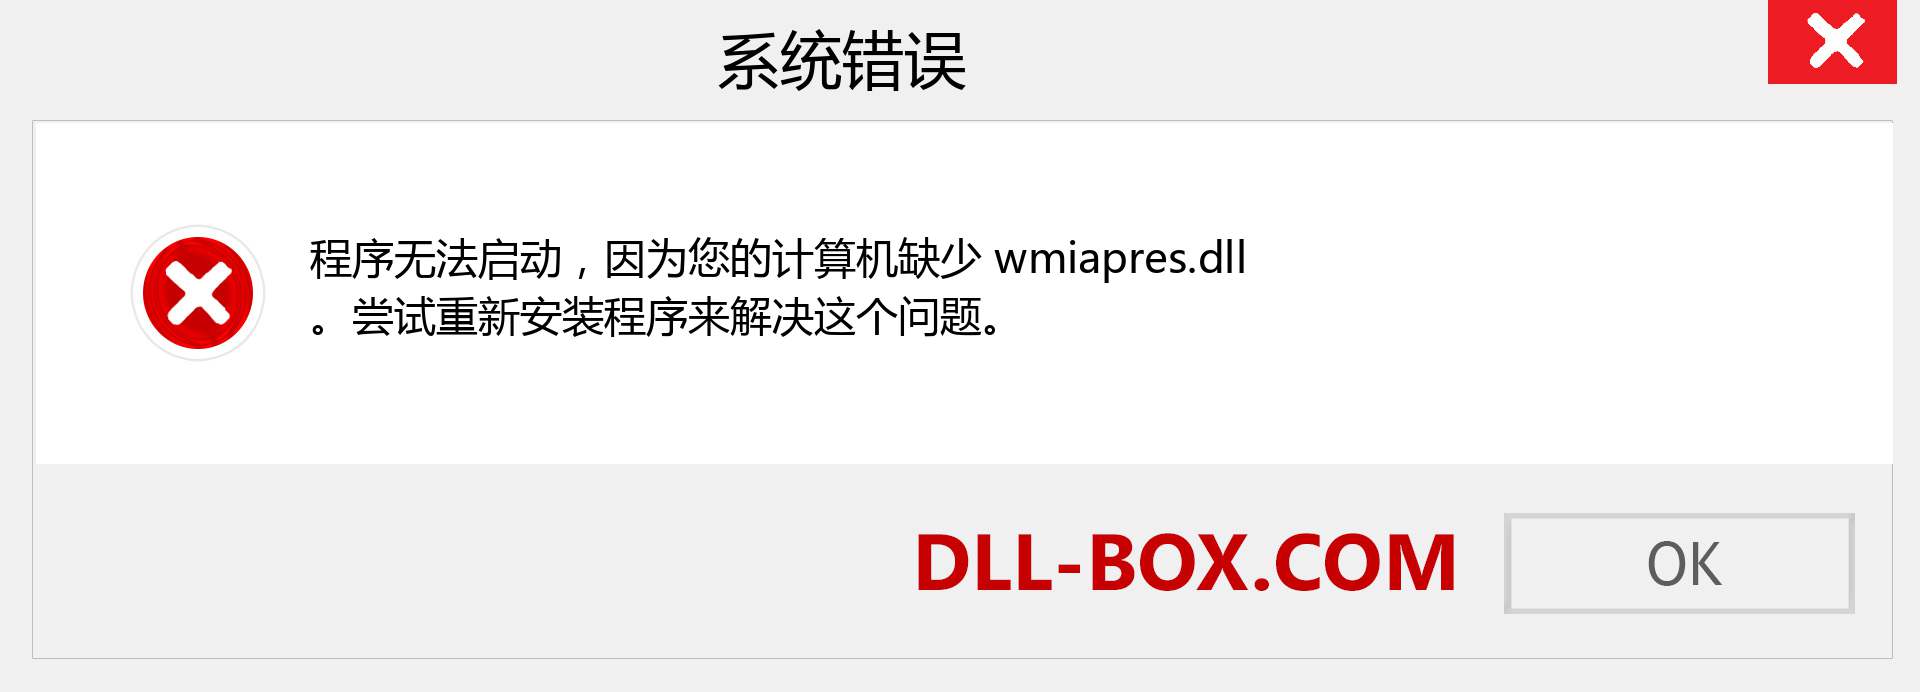 wmiapres.dll 文件丢失？。 适用于 Windows 7、8、10 的下载 - 修复 Windows、照片、图像上的 wmiapres dll 丢失错误